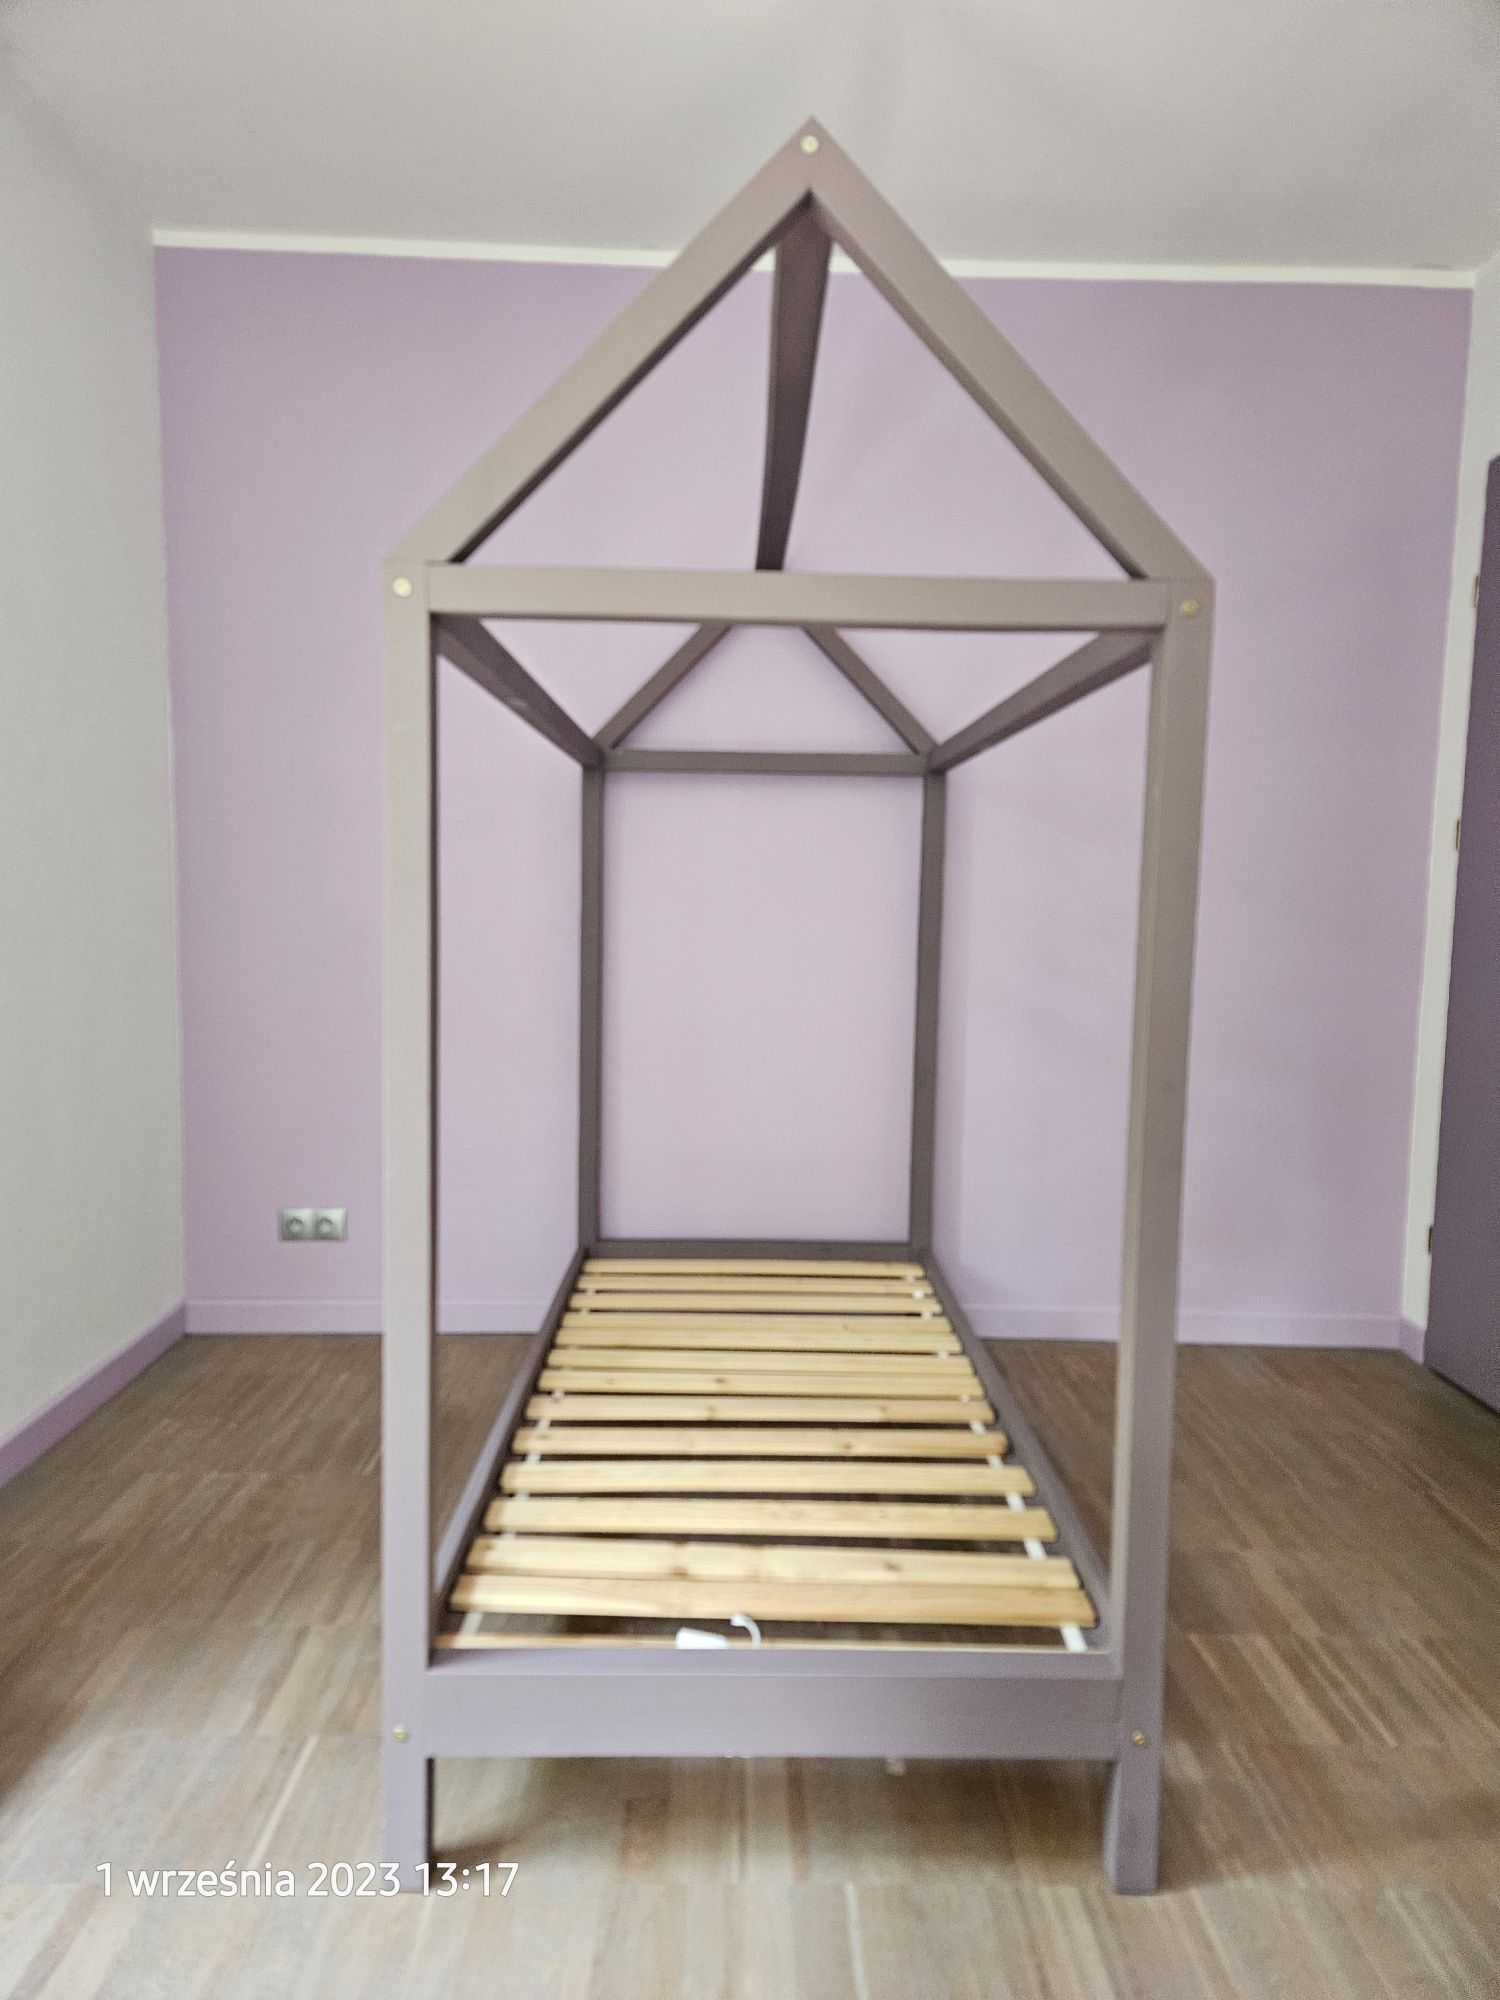 Łóżko domek ręcznie wykonane dla dziecka w wieku 3-11 lat